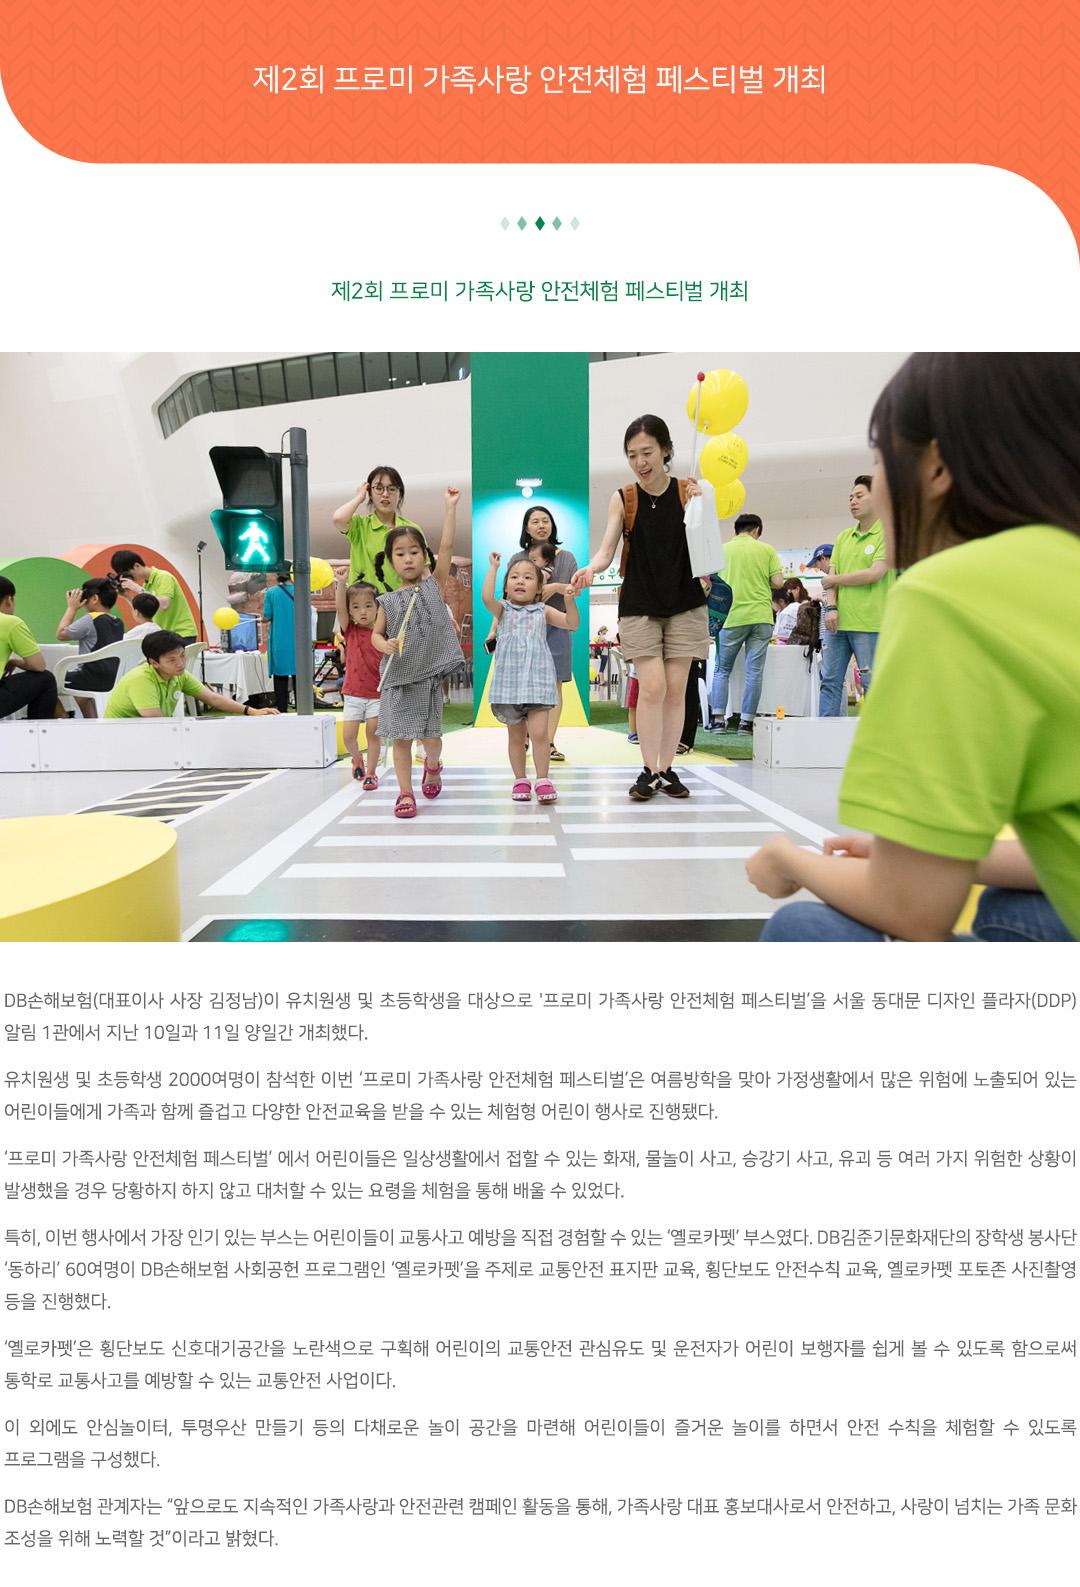 제2회 프로미 가족사랑 안전체험 페스티벌 개최